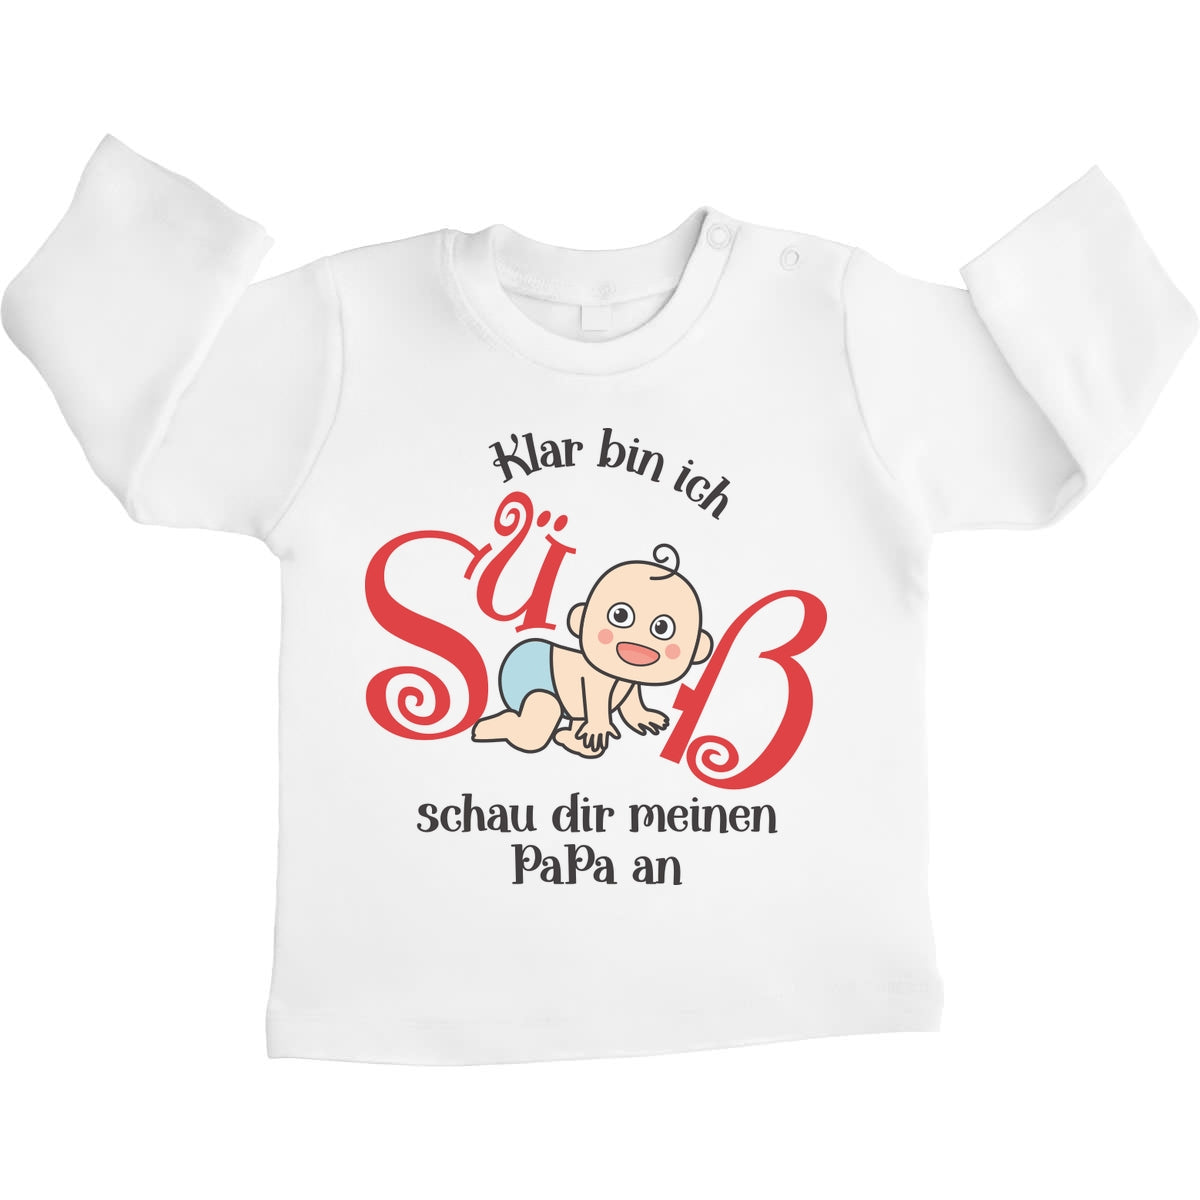 Klar bin ich süß mit süßes Baby Geschenk Papa Unisex Baby Langarmshirt Gr. 66-93